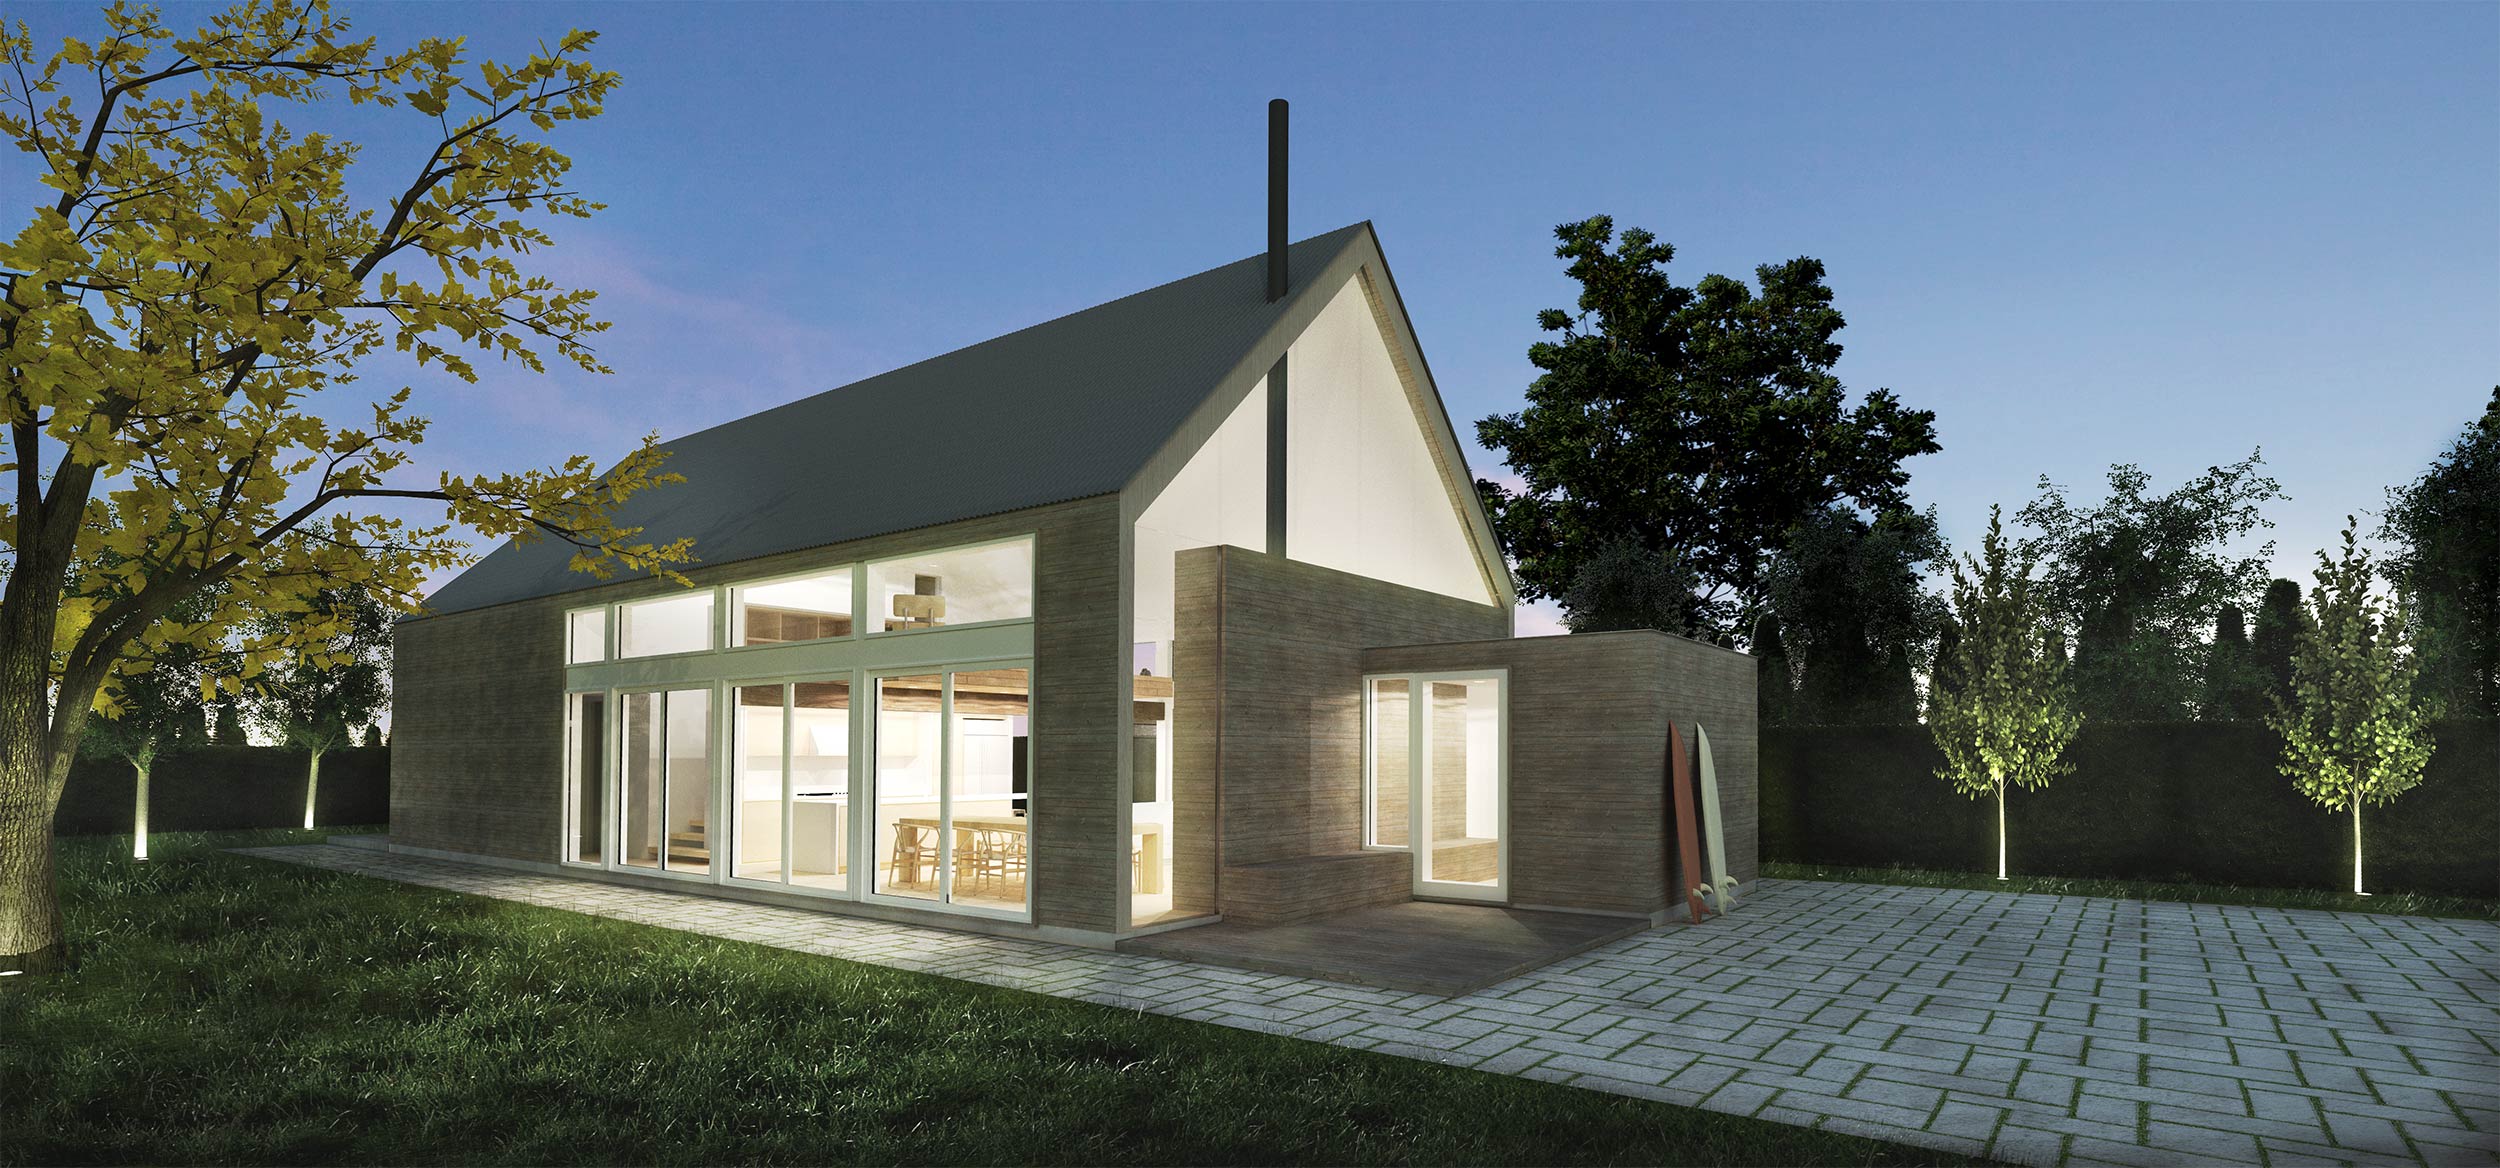 res4-resolution-4-architecture-modern-modular-prefab-seaside-residence-modern-gable-house-exterior-rendering.jpg